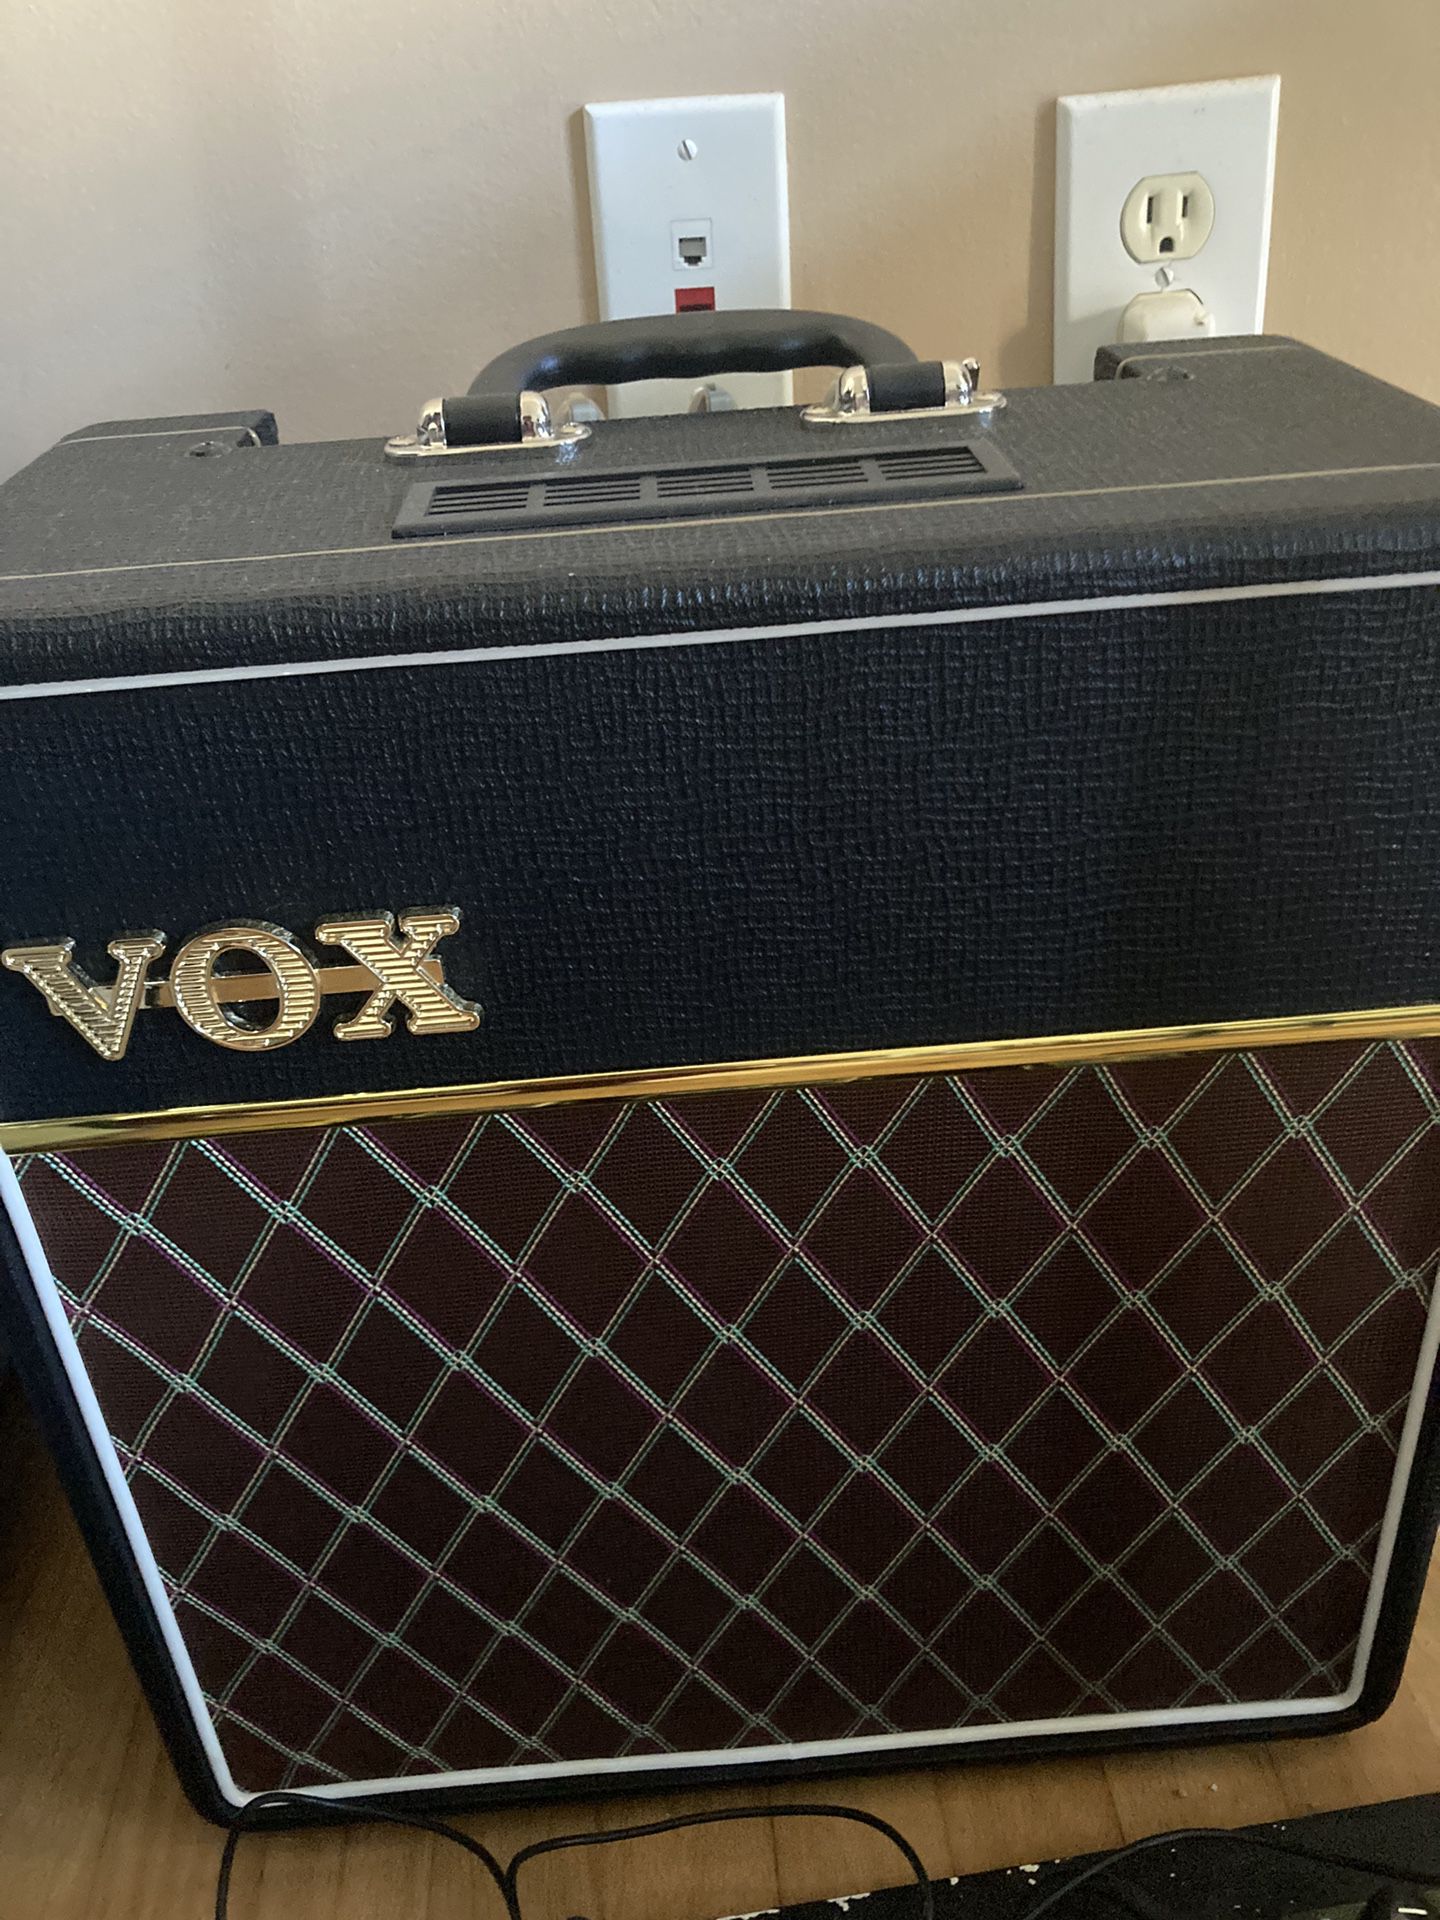 Vox AC4112 Tube Amp